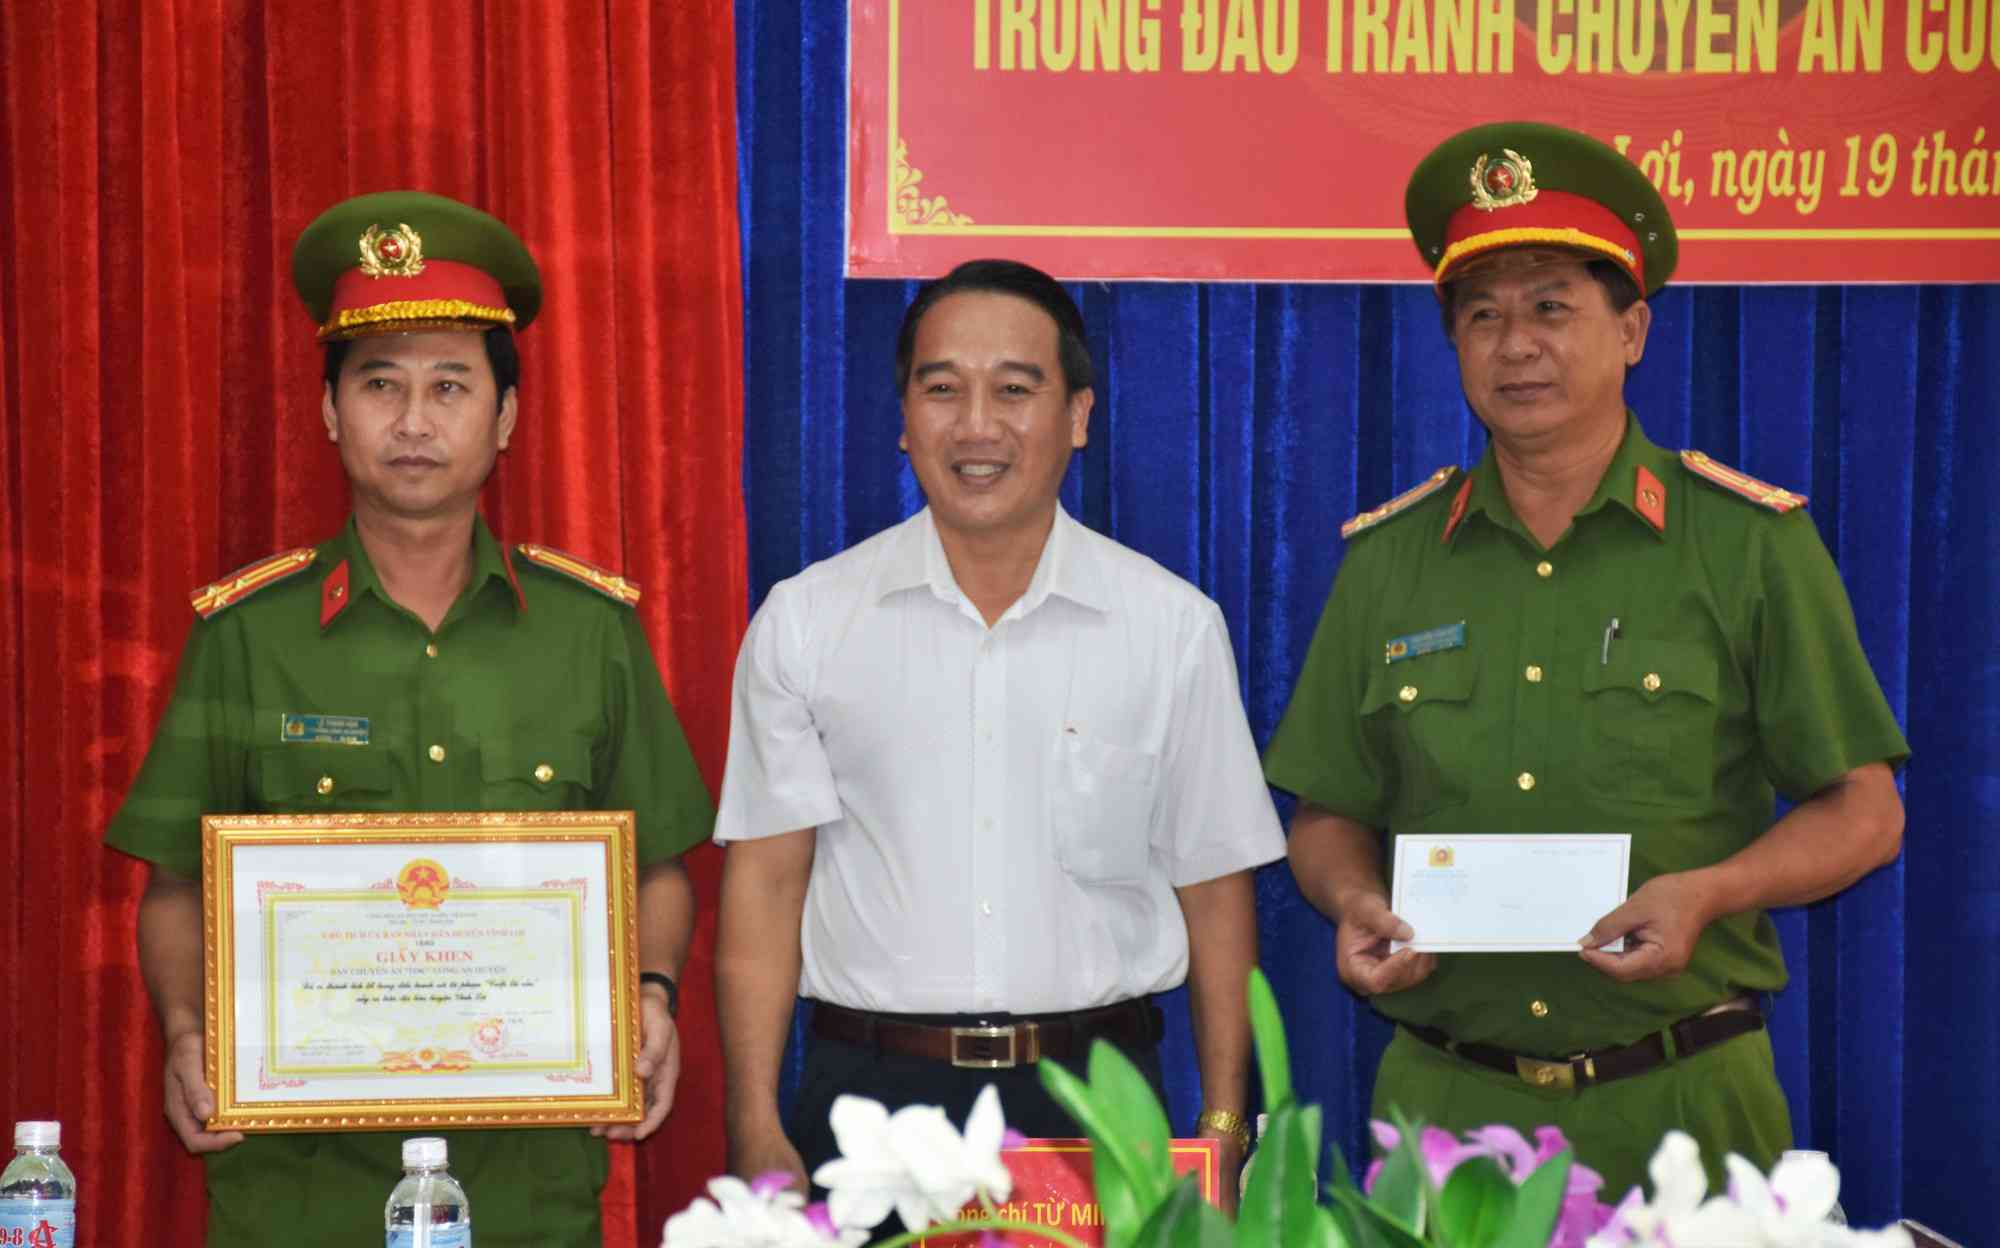 Ông Từ Minh Phúc, Chủ tịch UBND huyện Vĩnh Lợi trao giấy khen và thưởng nóng cho Công an huyện